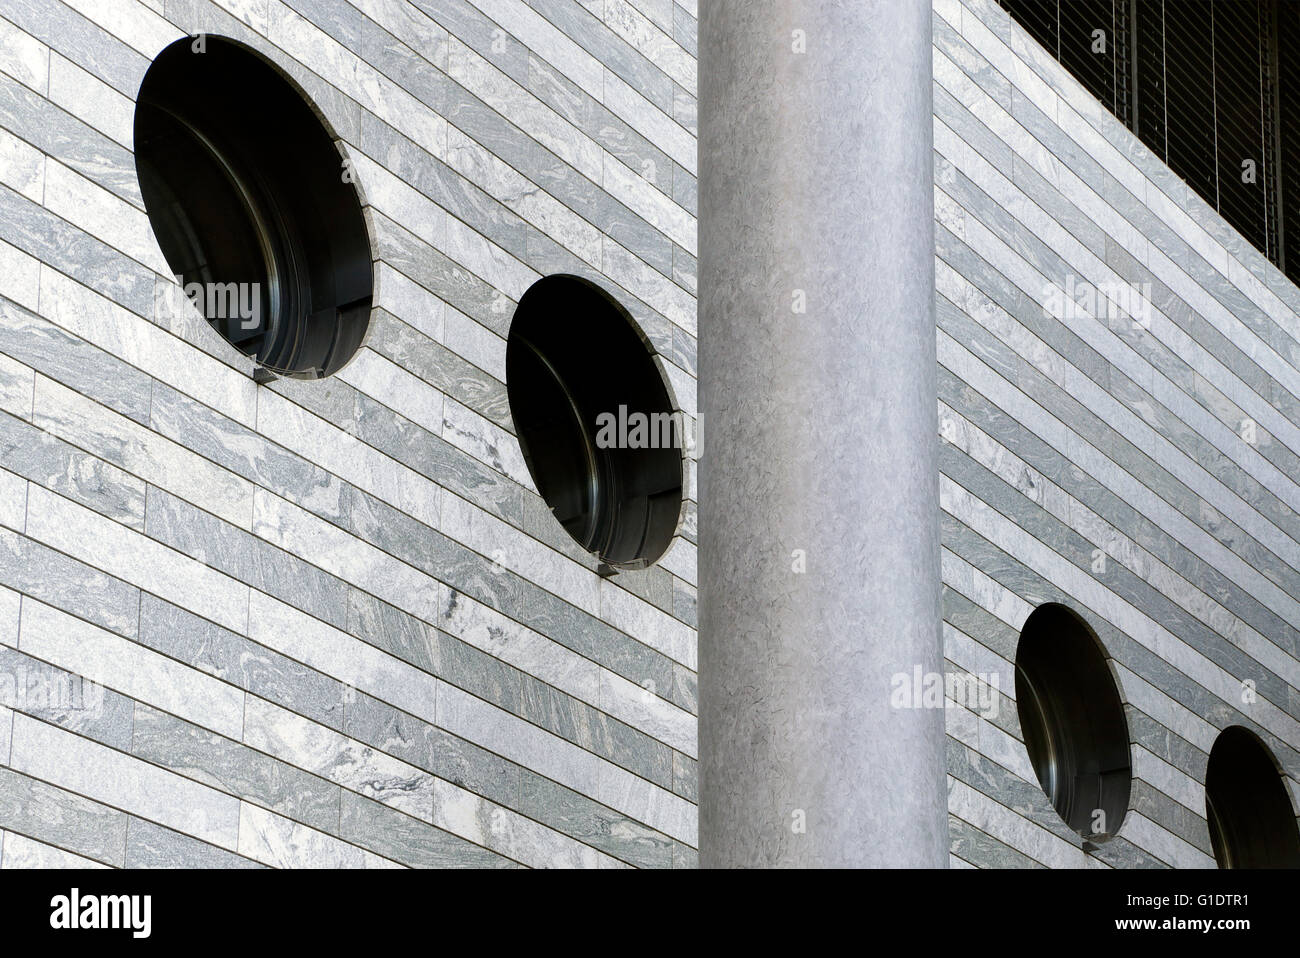 Mario Botta - Bank für internationalen Zahlungsausgleich - Architekturgebäude in Basel, Schweiz Stockfoto